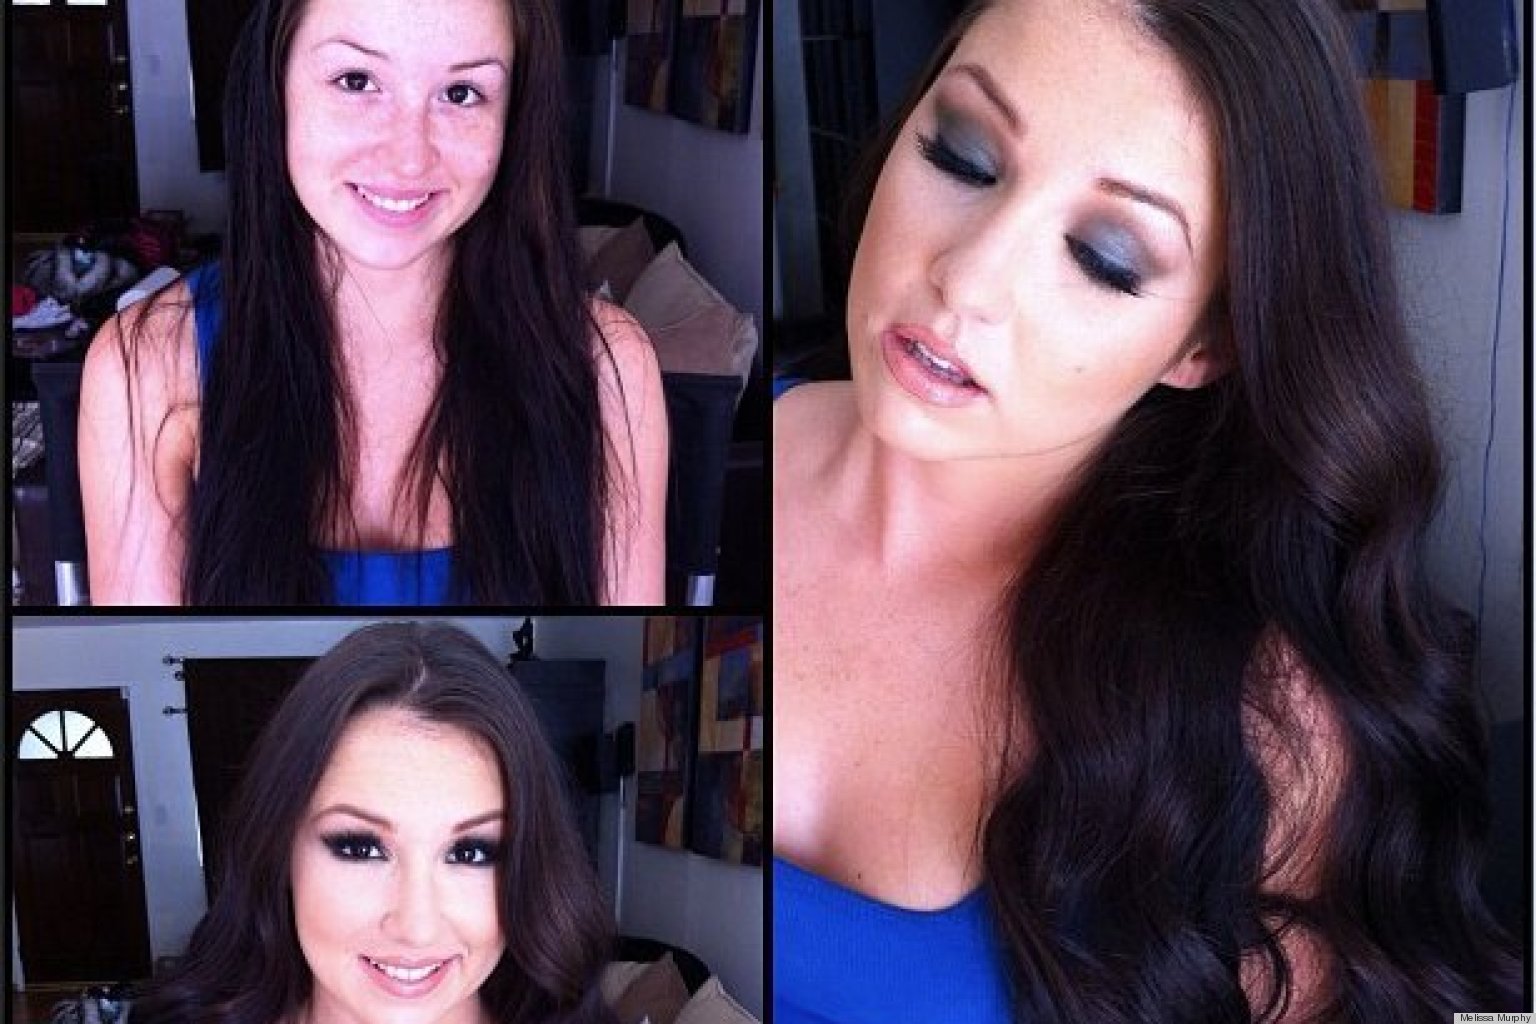 melissa murphy porn star makeup artist bares her beauty secrets photos huffpost